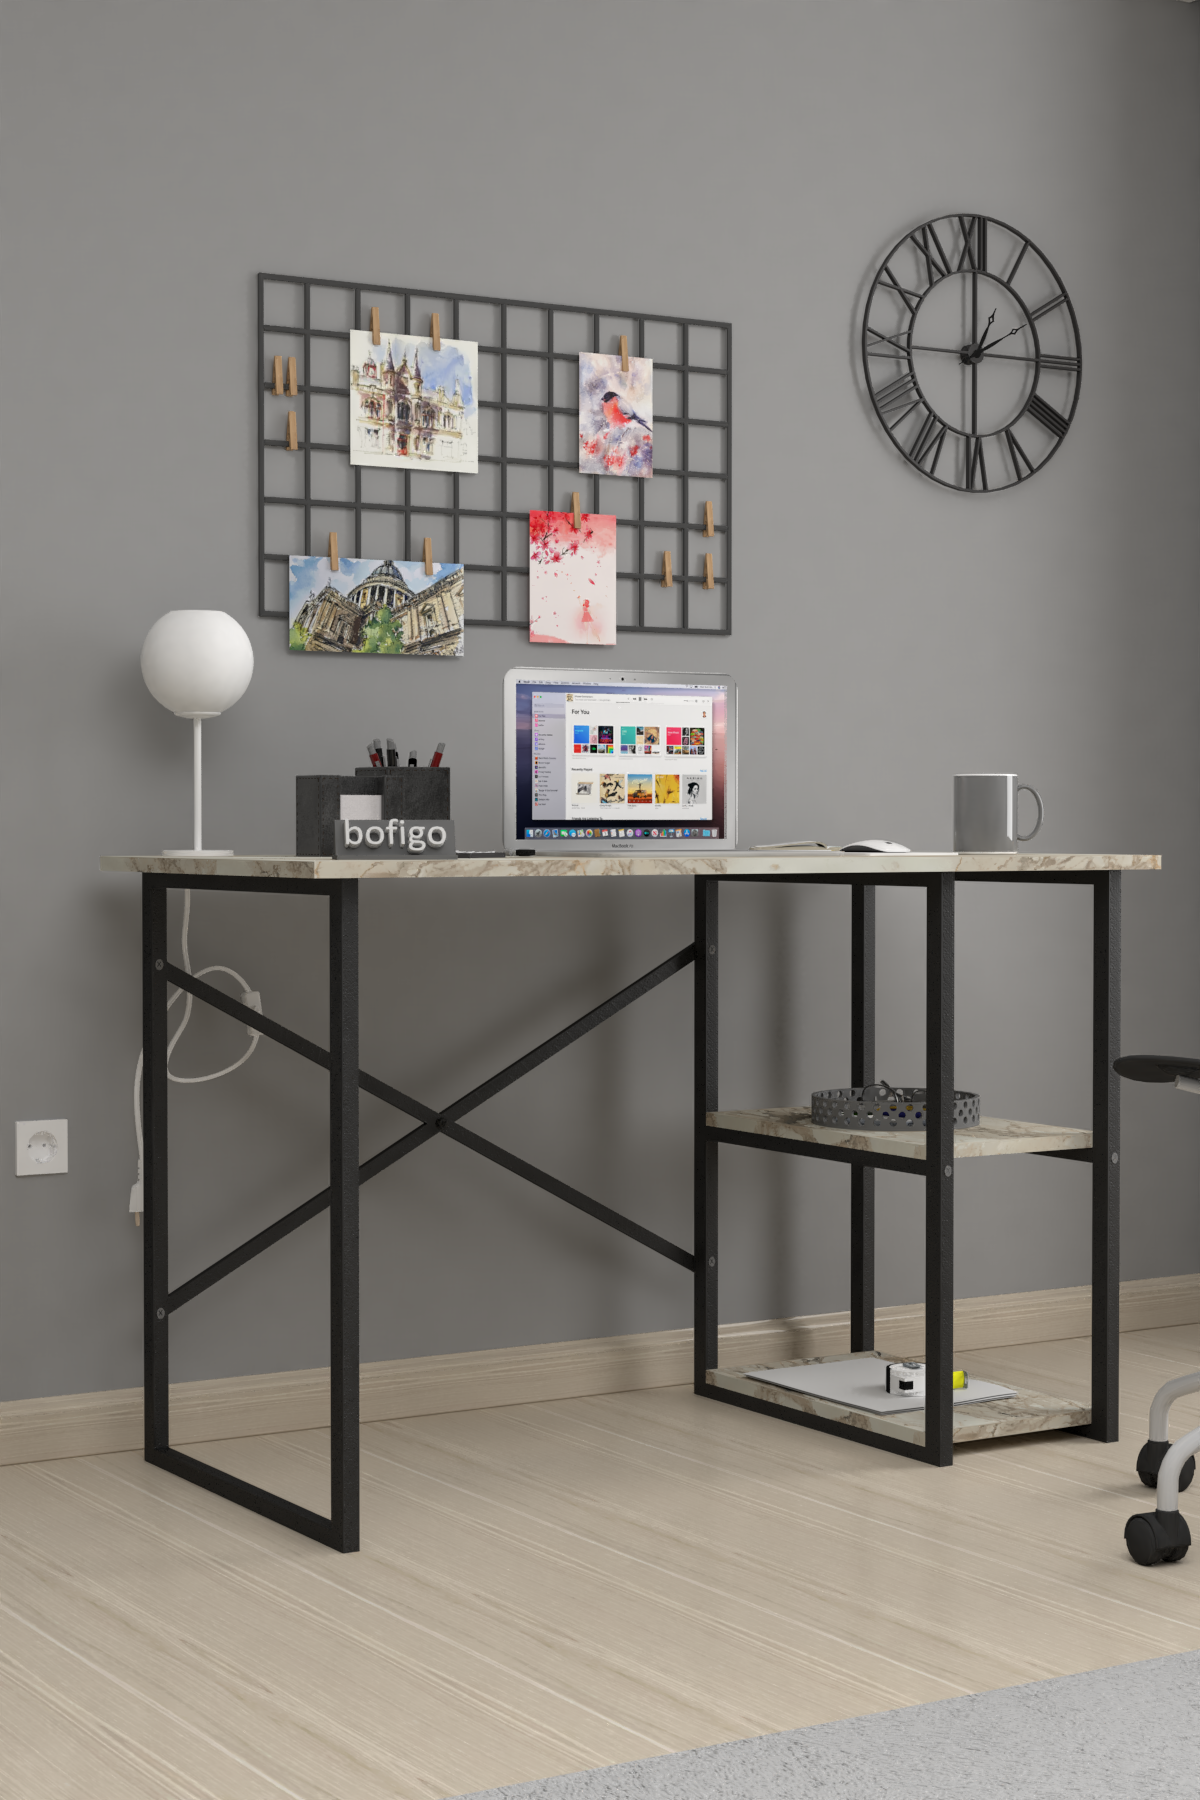 Bofigo 2 Shelf Desk 60x120 cm Efes